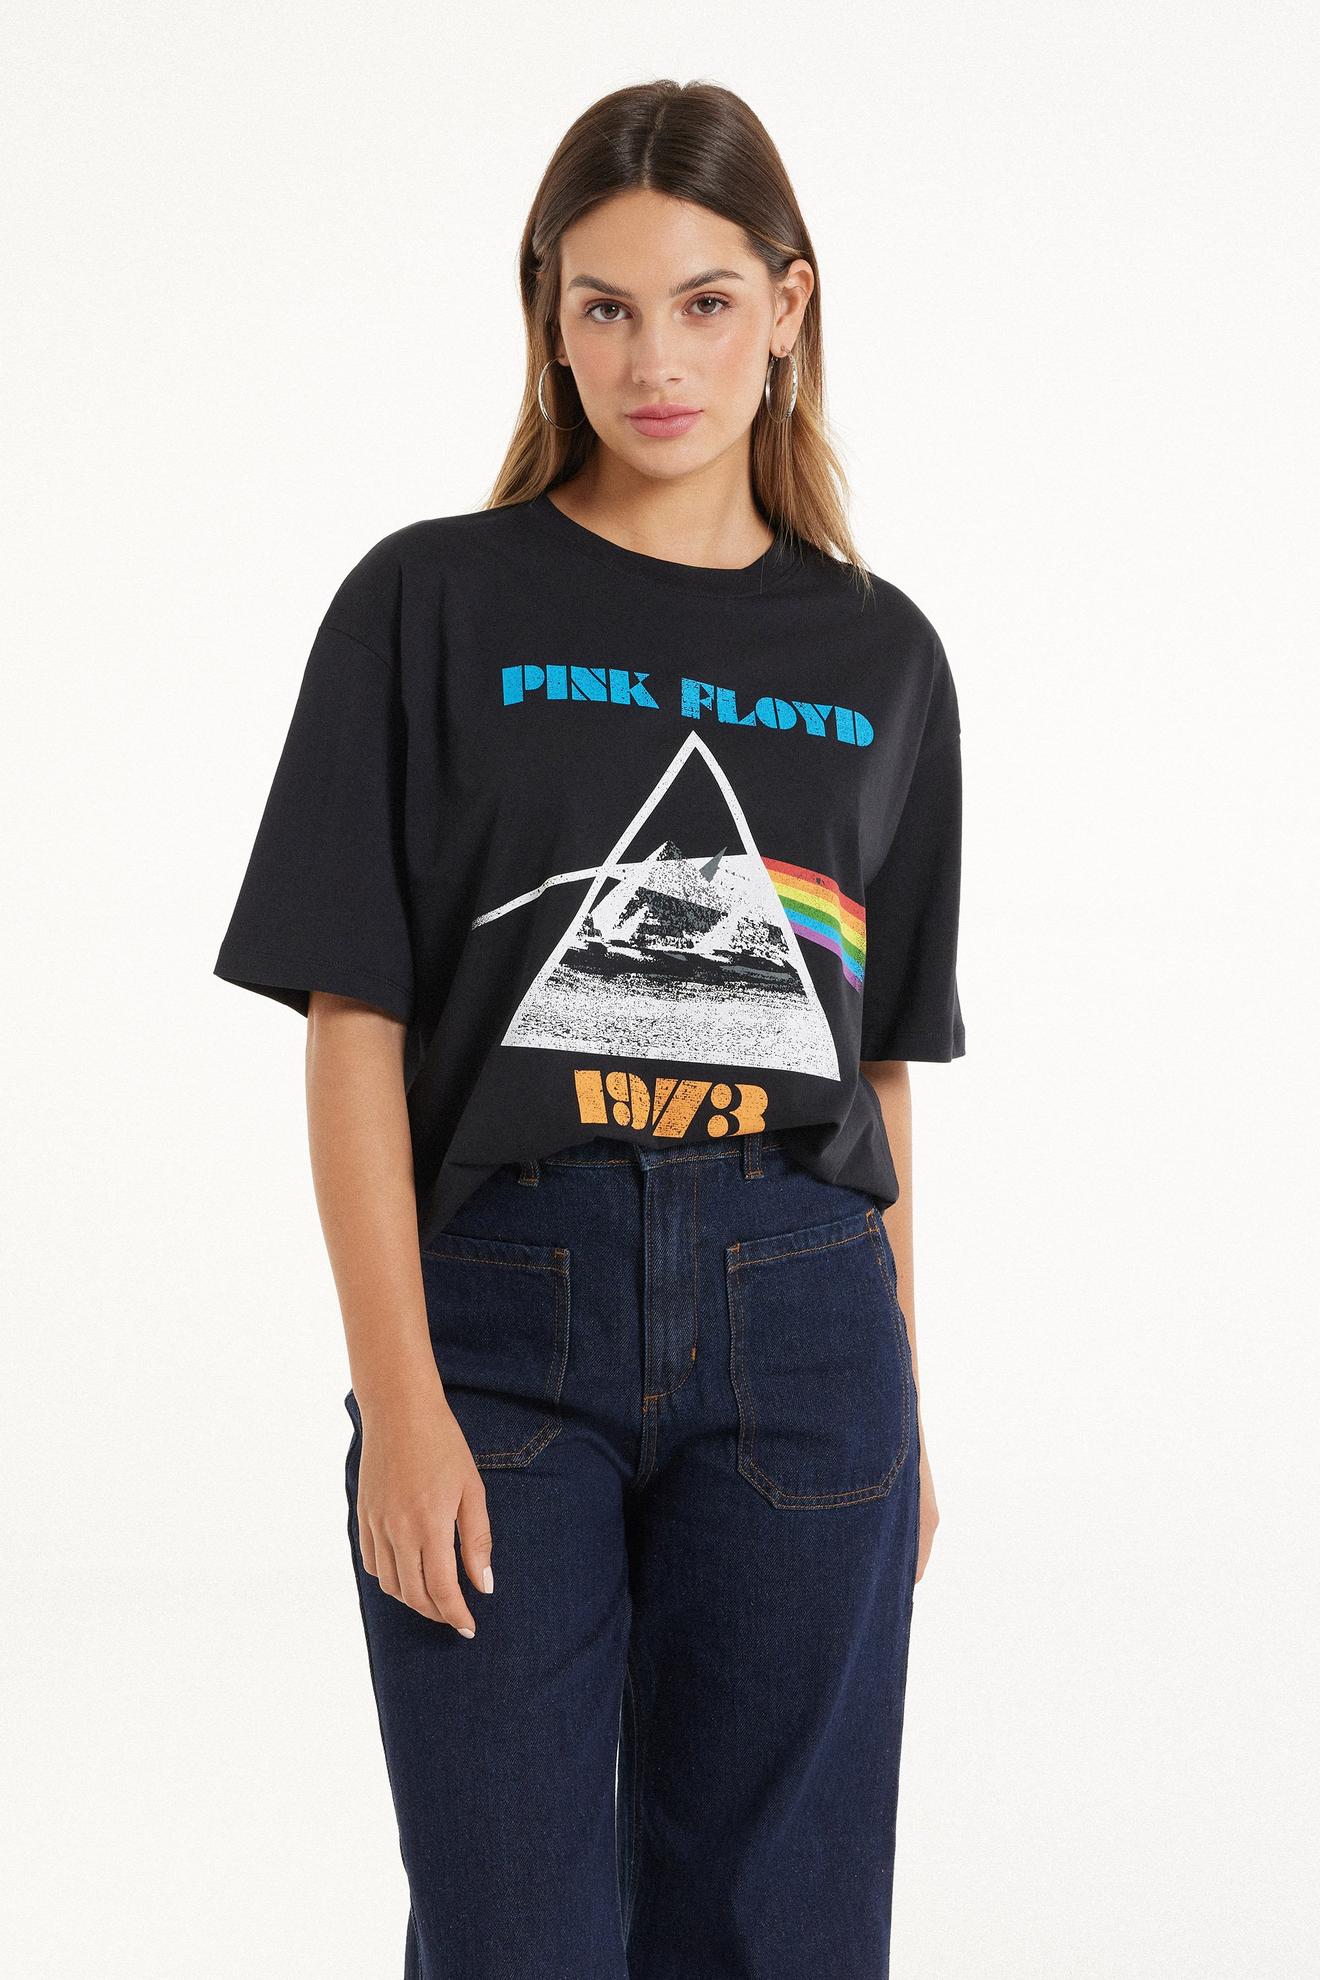 Προσφορά Unisex T-shirt με Print Pink Floyd για 17,99€ σε Tezenis